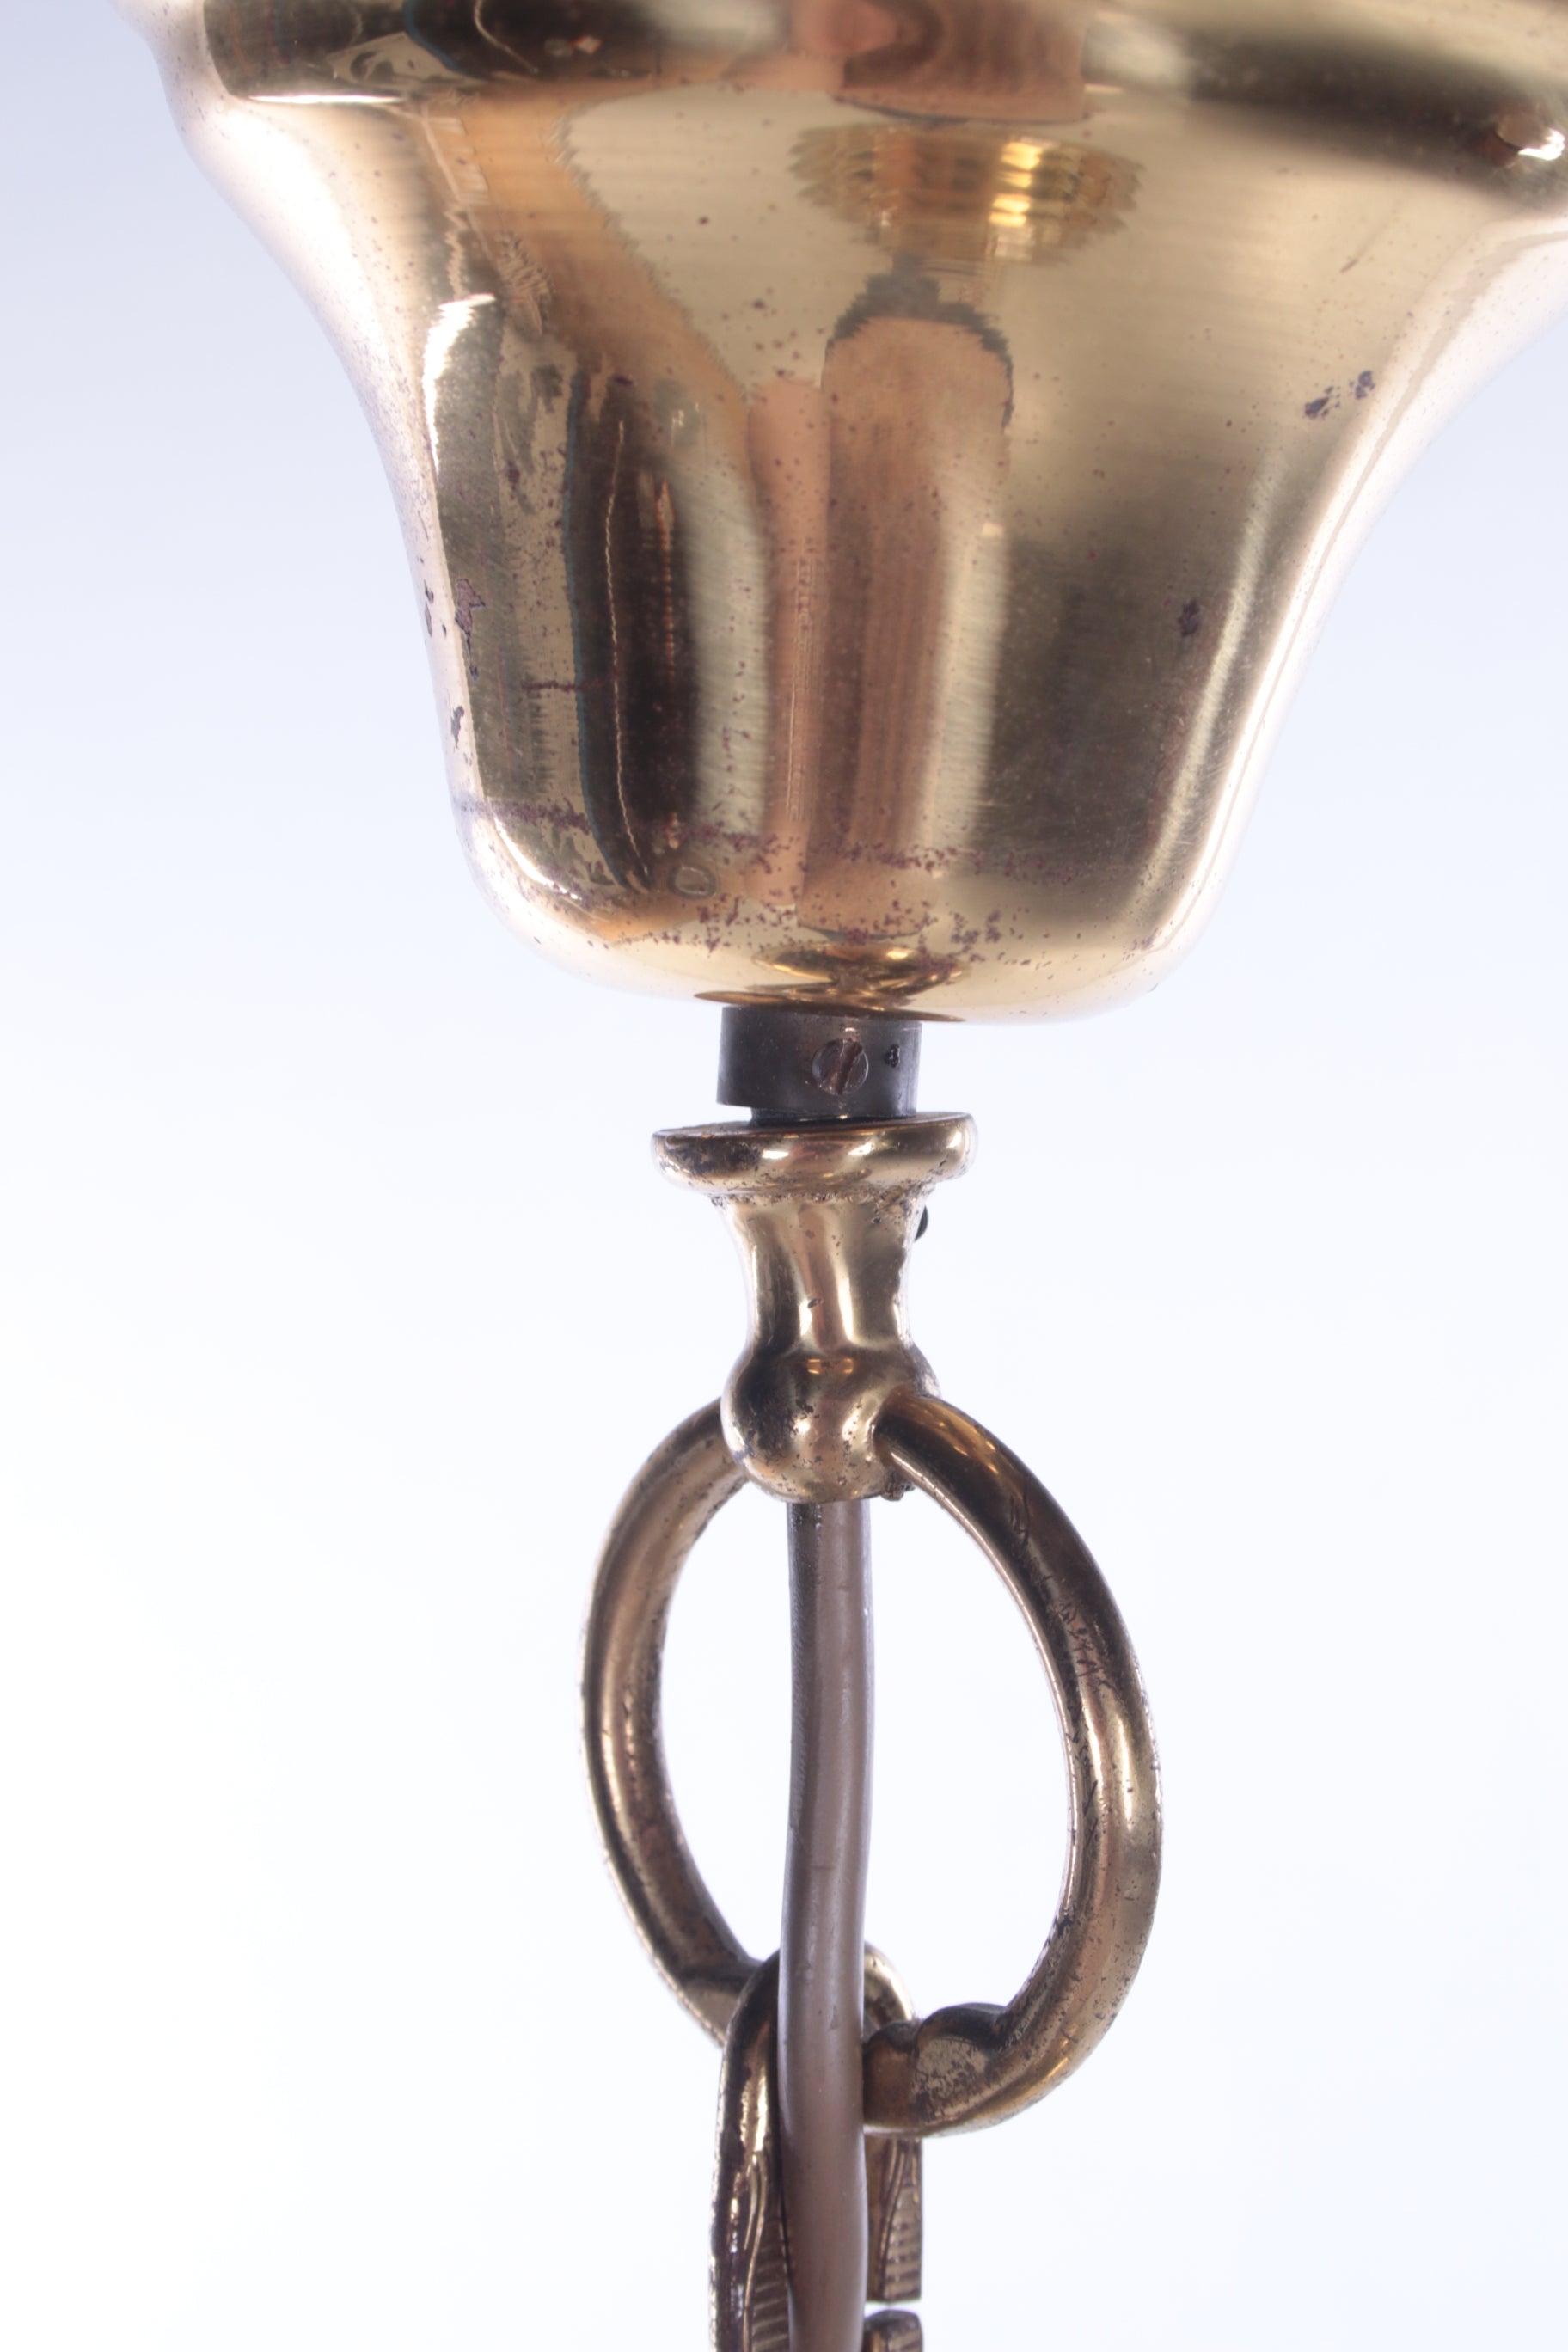 Hollywood Regency Hanglamp met Murano glas,Fischer Leuchten 70s detail ketting